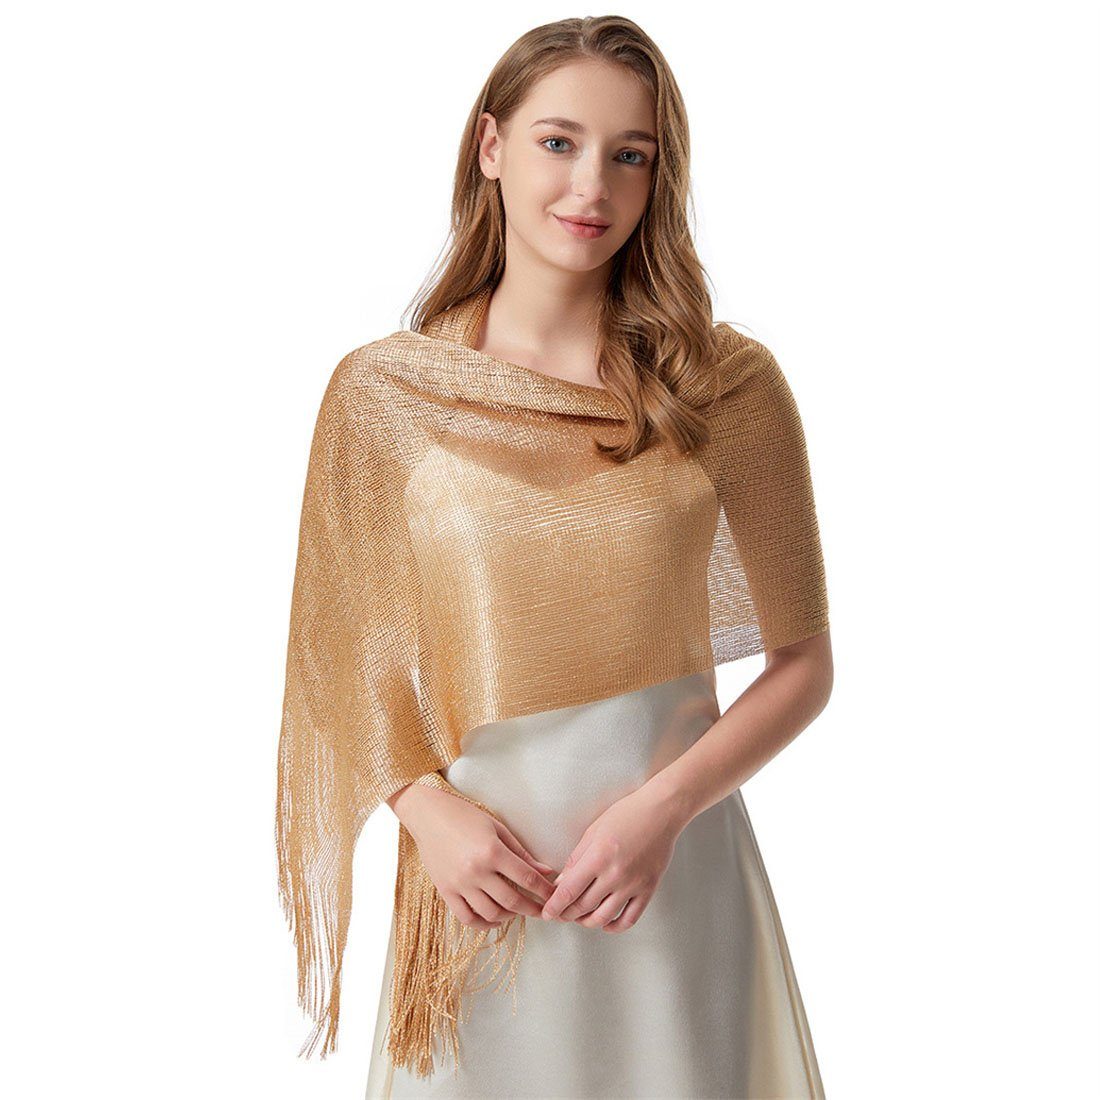 DÖRÖY Seidenschal Frauen Schal Gold lange wickeln dünnen Schal Schal Sommer Schal Kopftuch